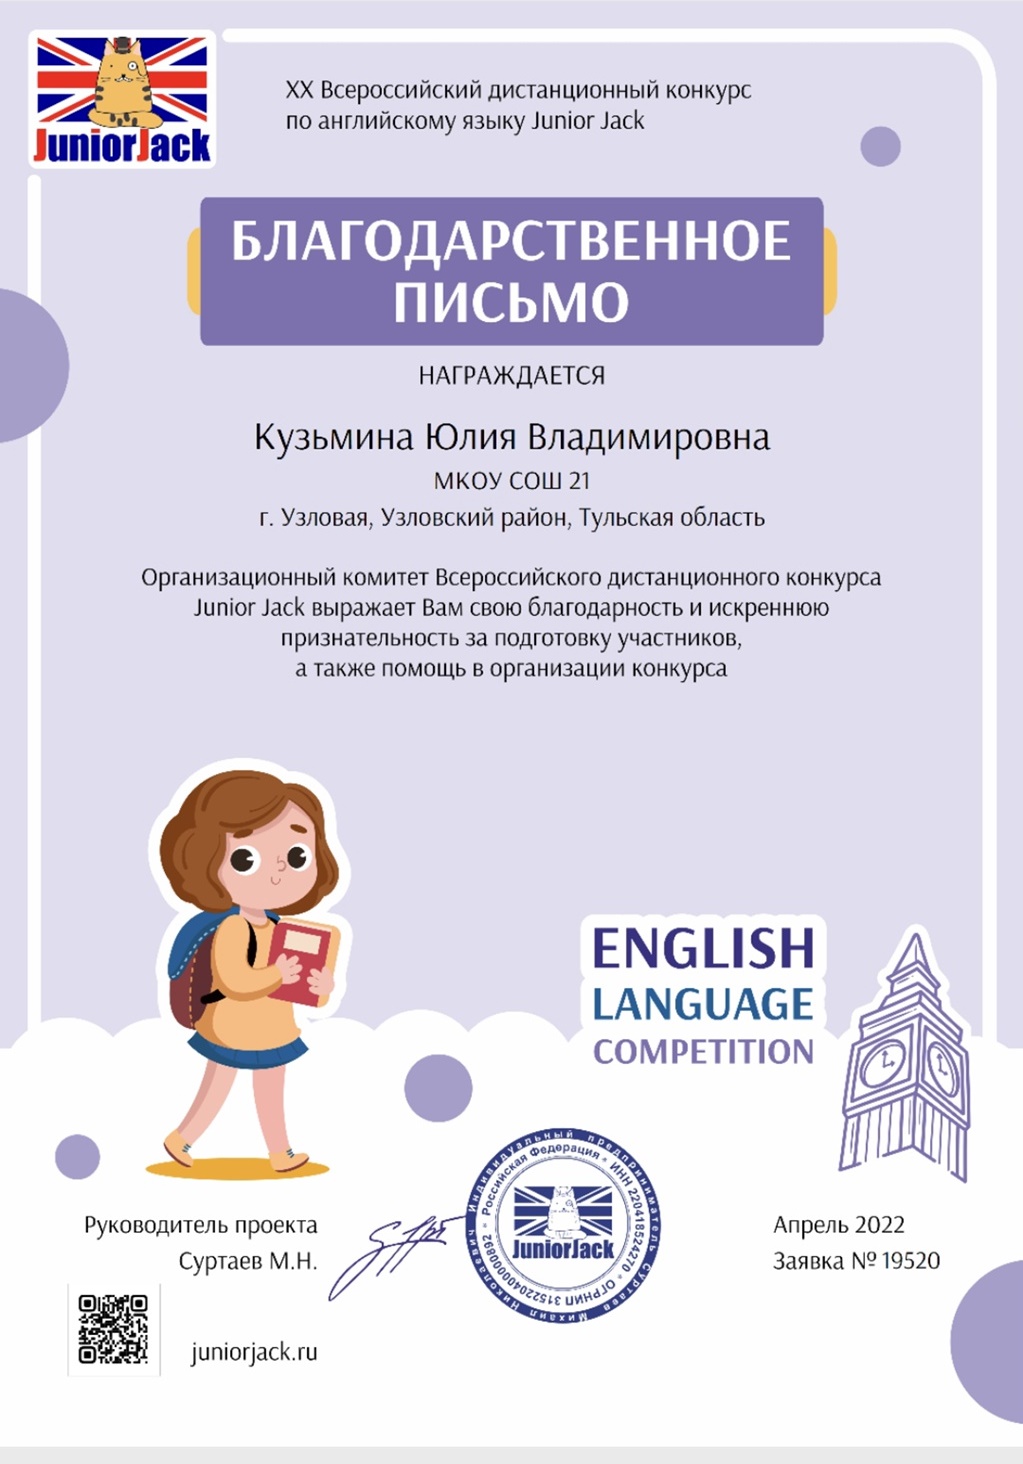 Всероссийский дистанционный конкурс по английскому языку Junior Jack.